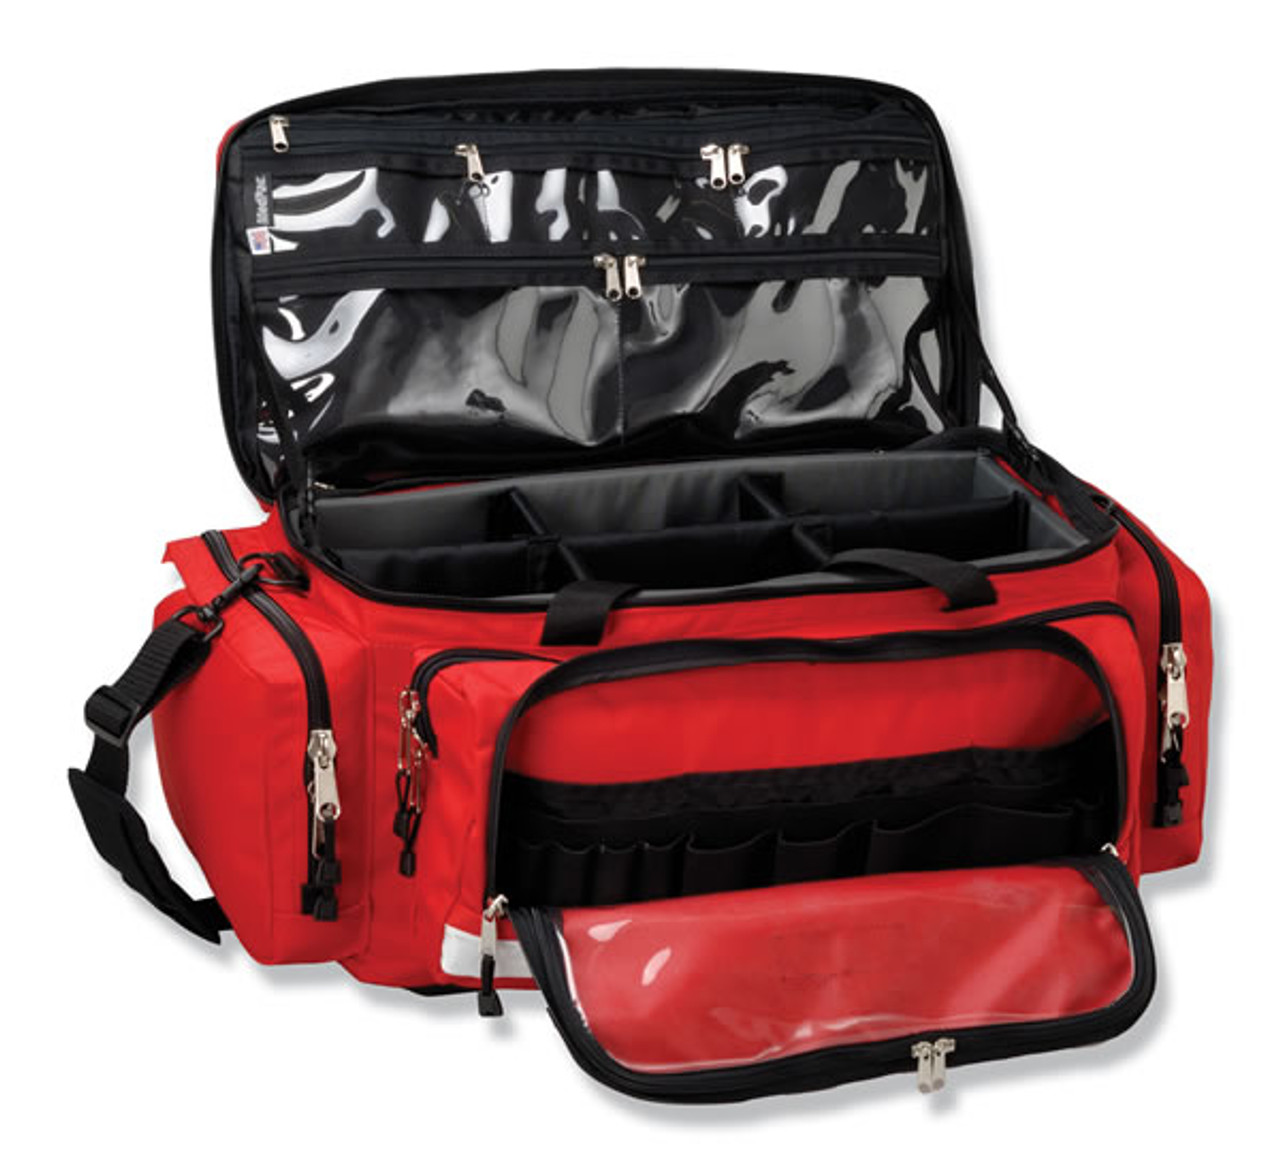 medpac 4800 - MedPac Professional Medical Bags